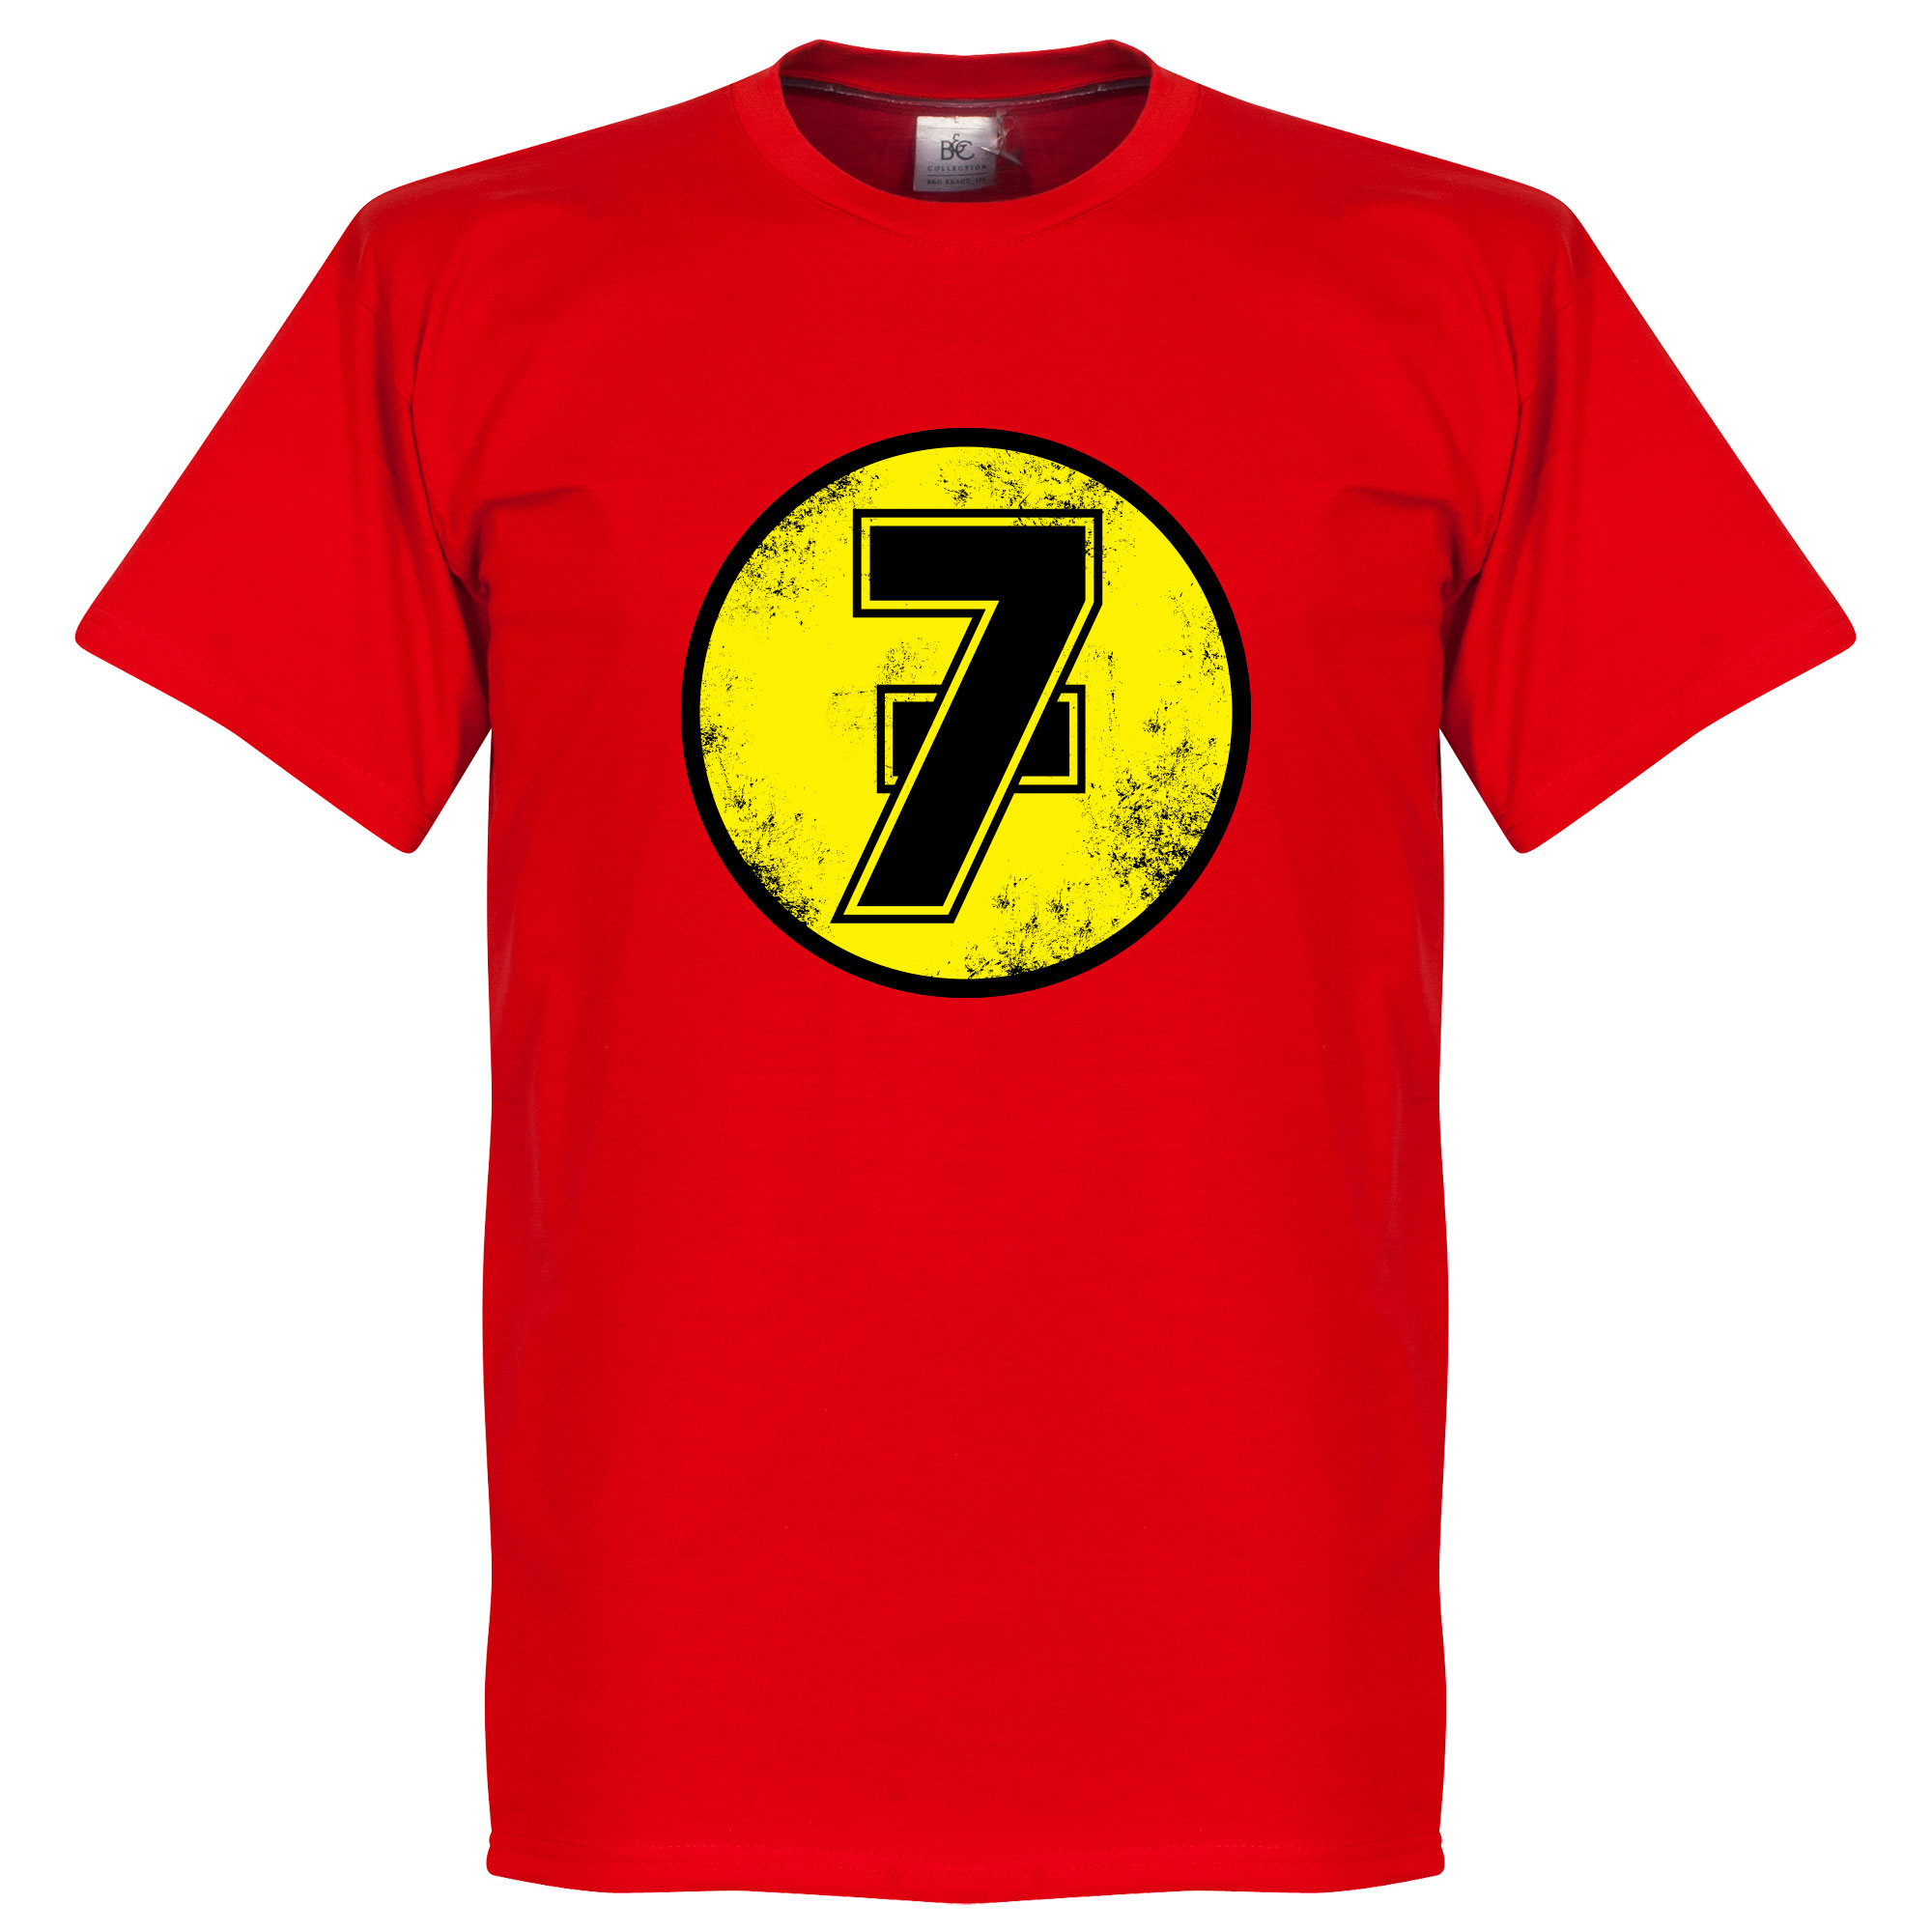 Barry Sheene No7 T-Shirt Rood XS